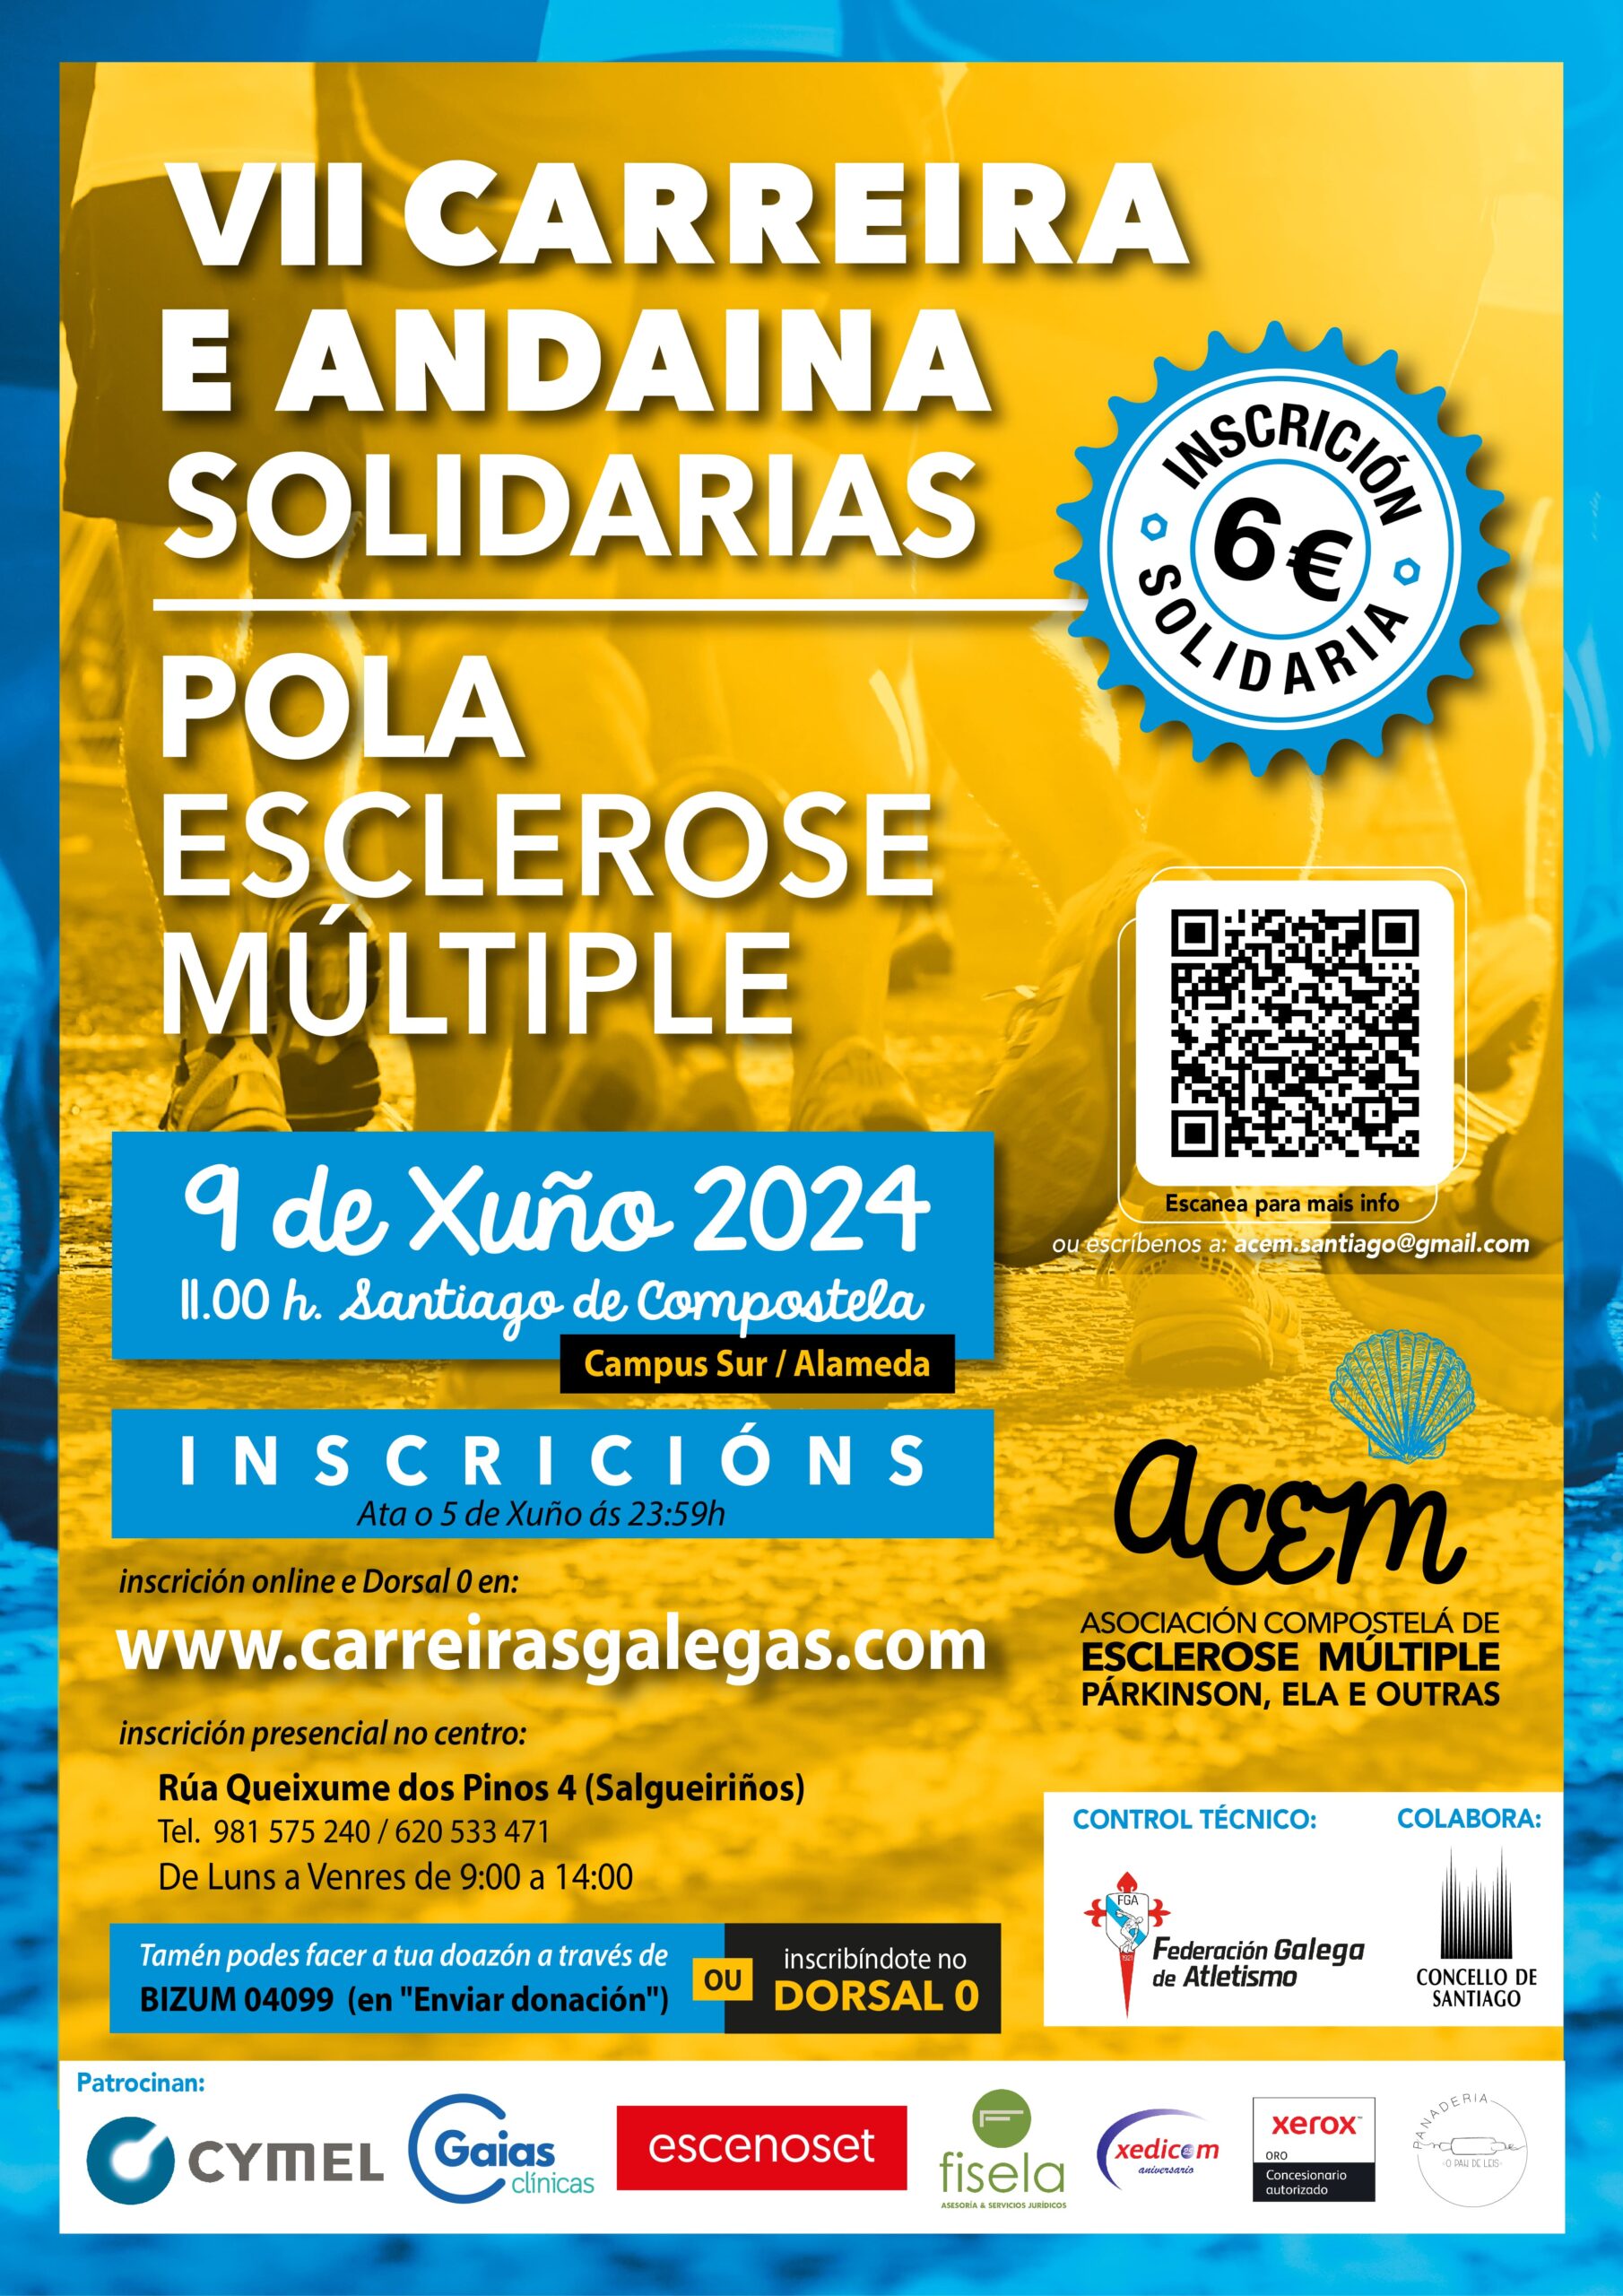 VII Carreira e Andaina Solidarias pola Esclerose Múltiple 2024